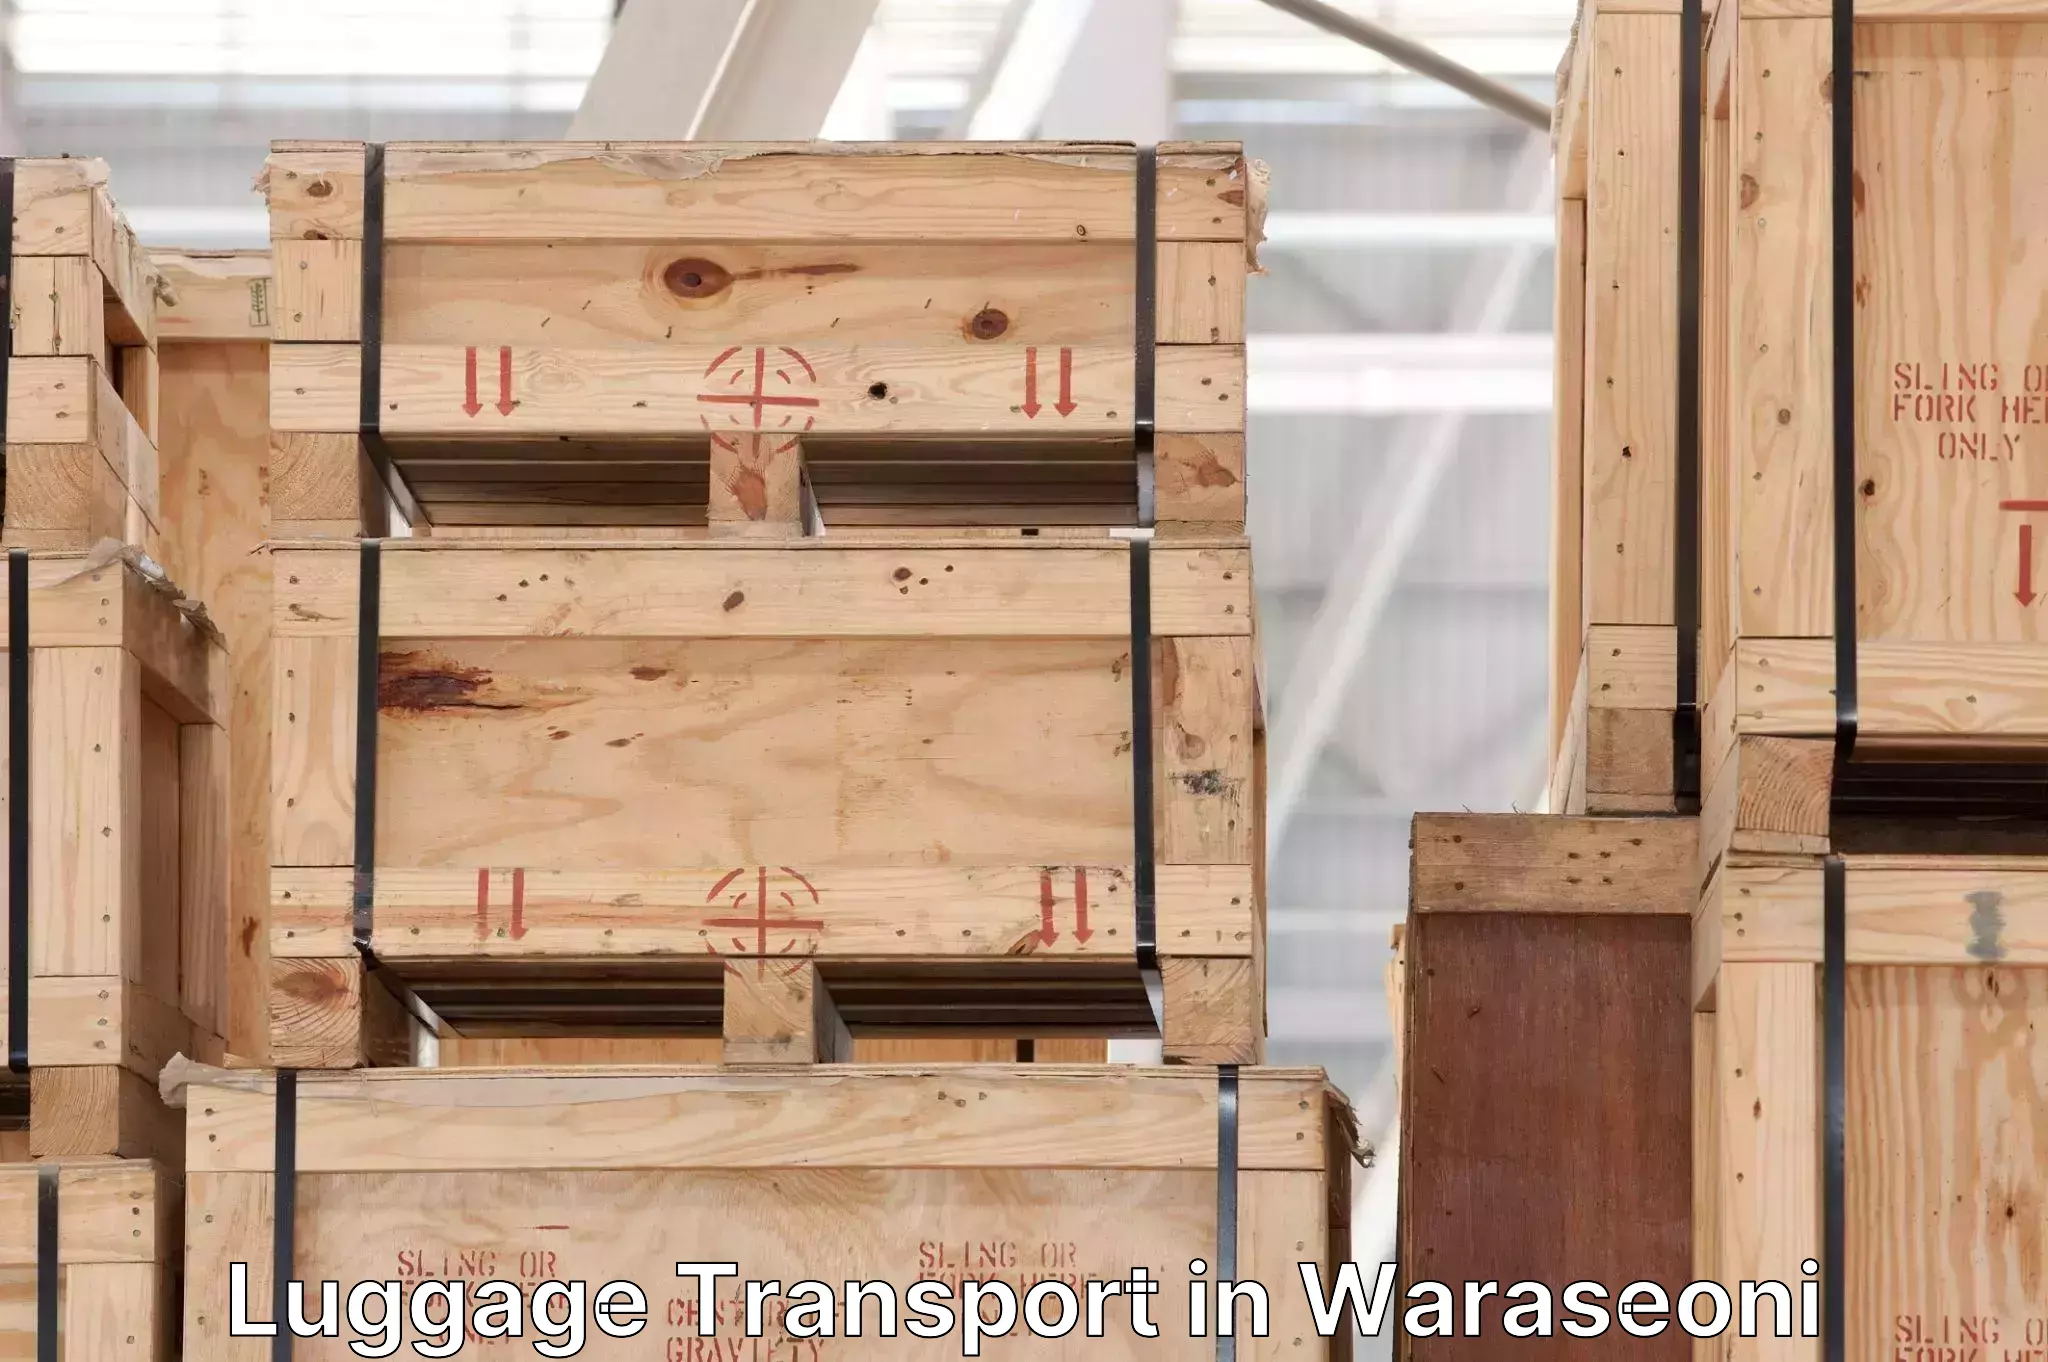 Luggage shipping trends in Waraseoni